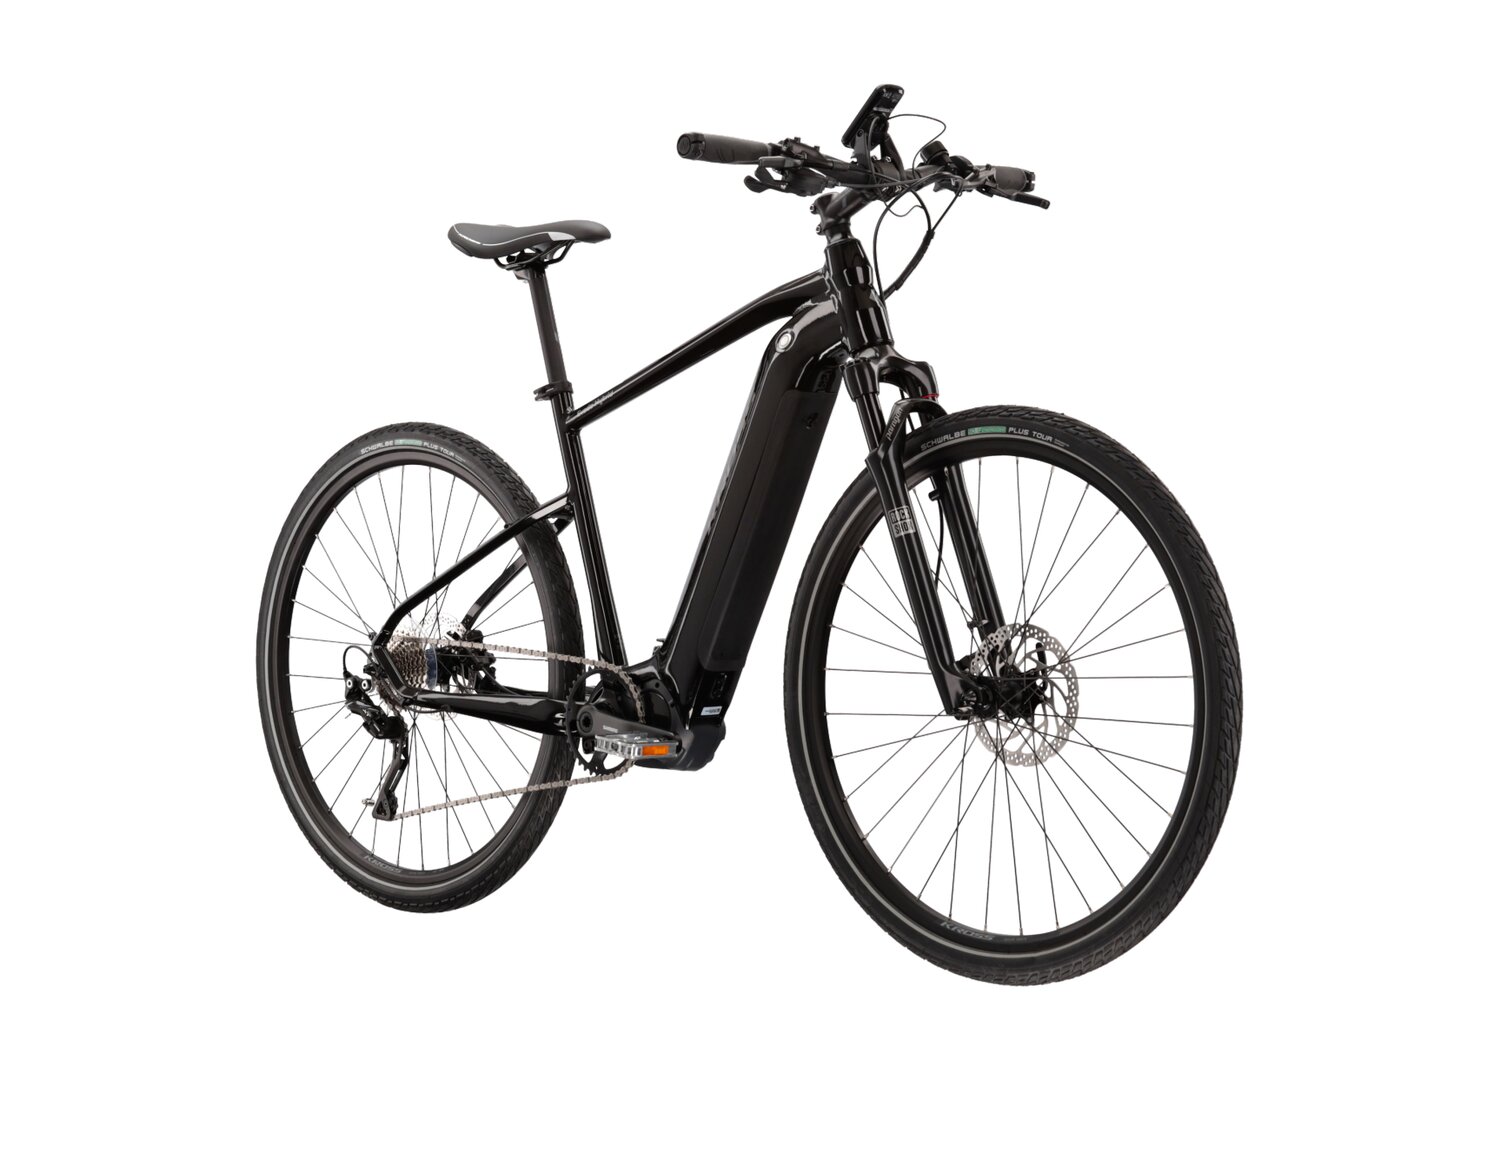  Elektryczny rower crossowy KROSS Evado Hybrid 6.0 630 Wh na aluminiowej ramie w kolorze czarnym wyposażony w osprzęt Shimano i napęd elektryczny Shimano